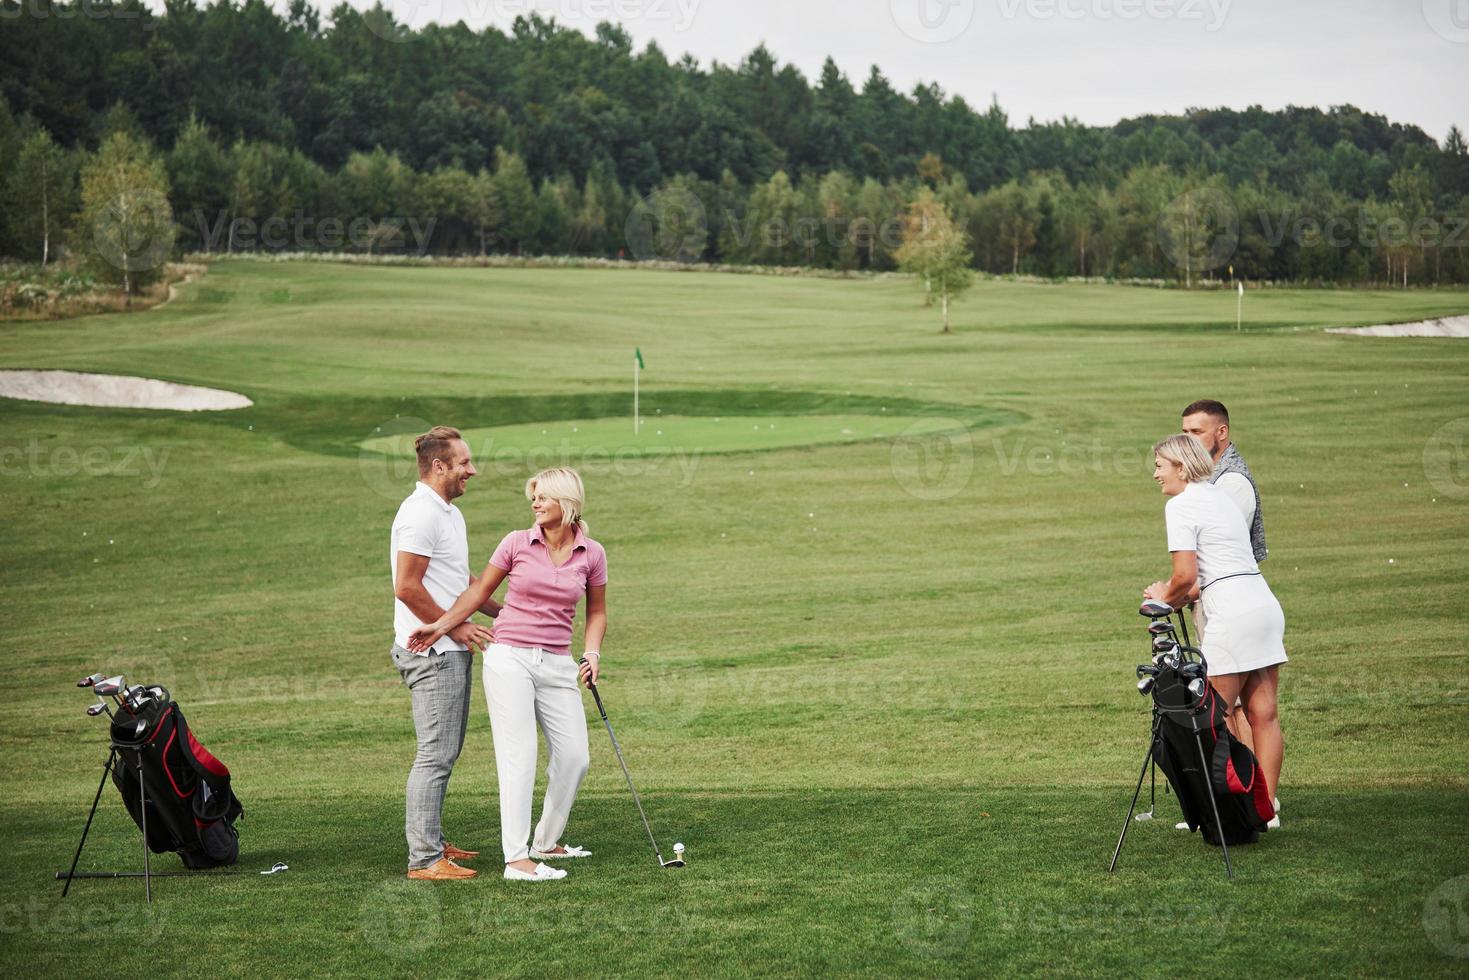 grupo de amigos estilosos no campo de golfe aprendem a jogar um novo jogo foto